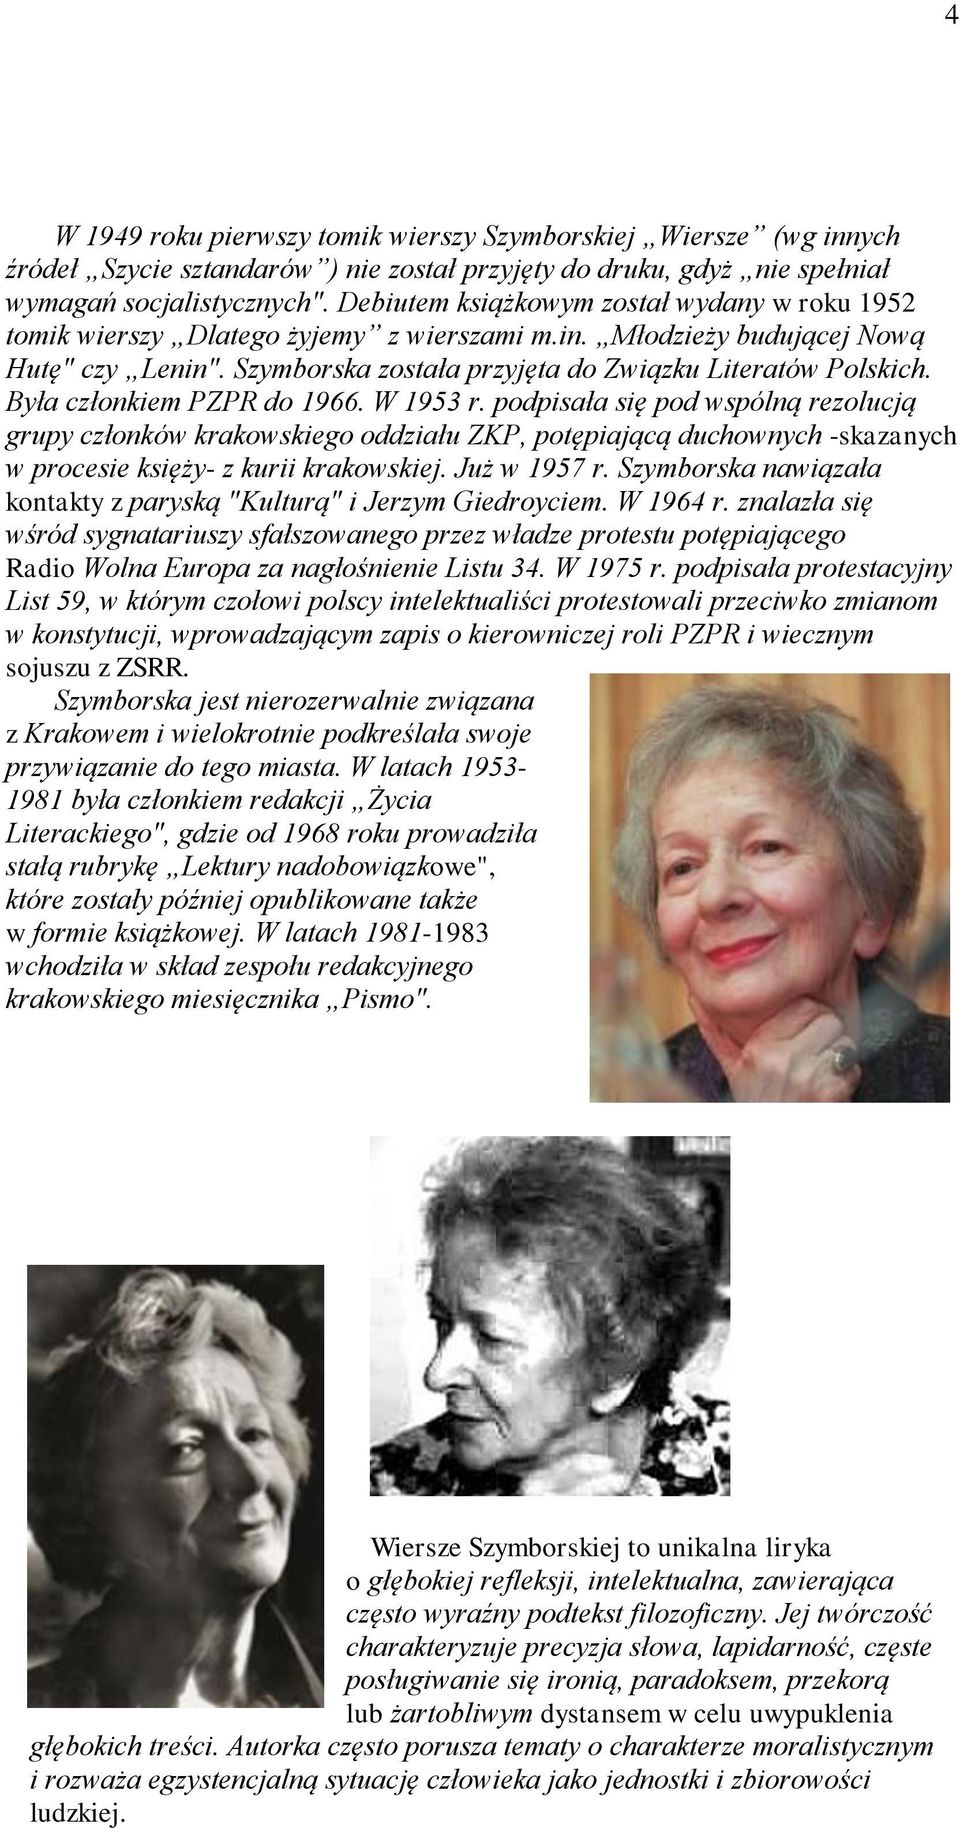 Była członkiem PZPR do 1966. W 1953 r. podpisała się pod wspólną rezolucją grupy członków krakowskiego oddziału ZKP, potępiającą duchownych -skazanych w procesie księży- z kurii krakowskiej.